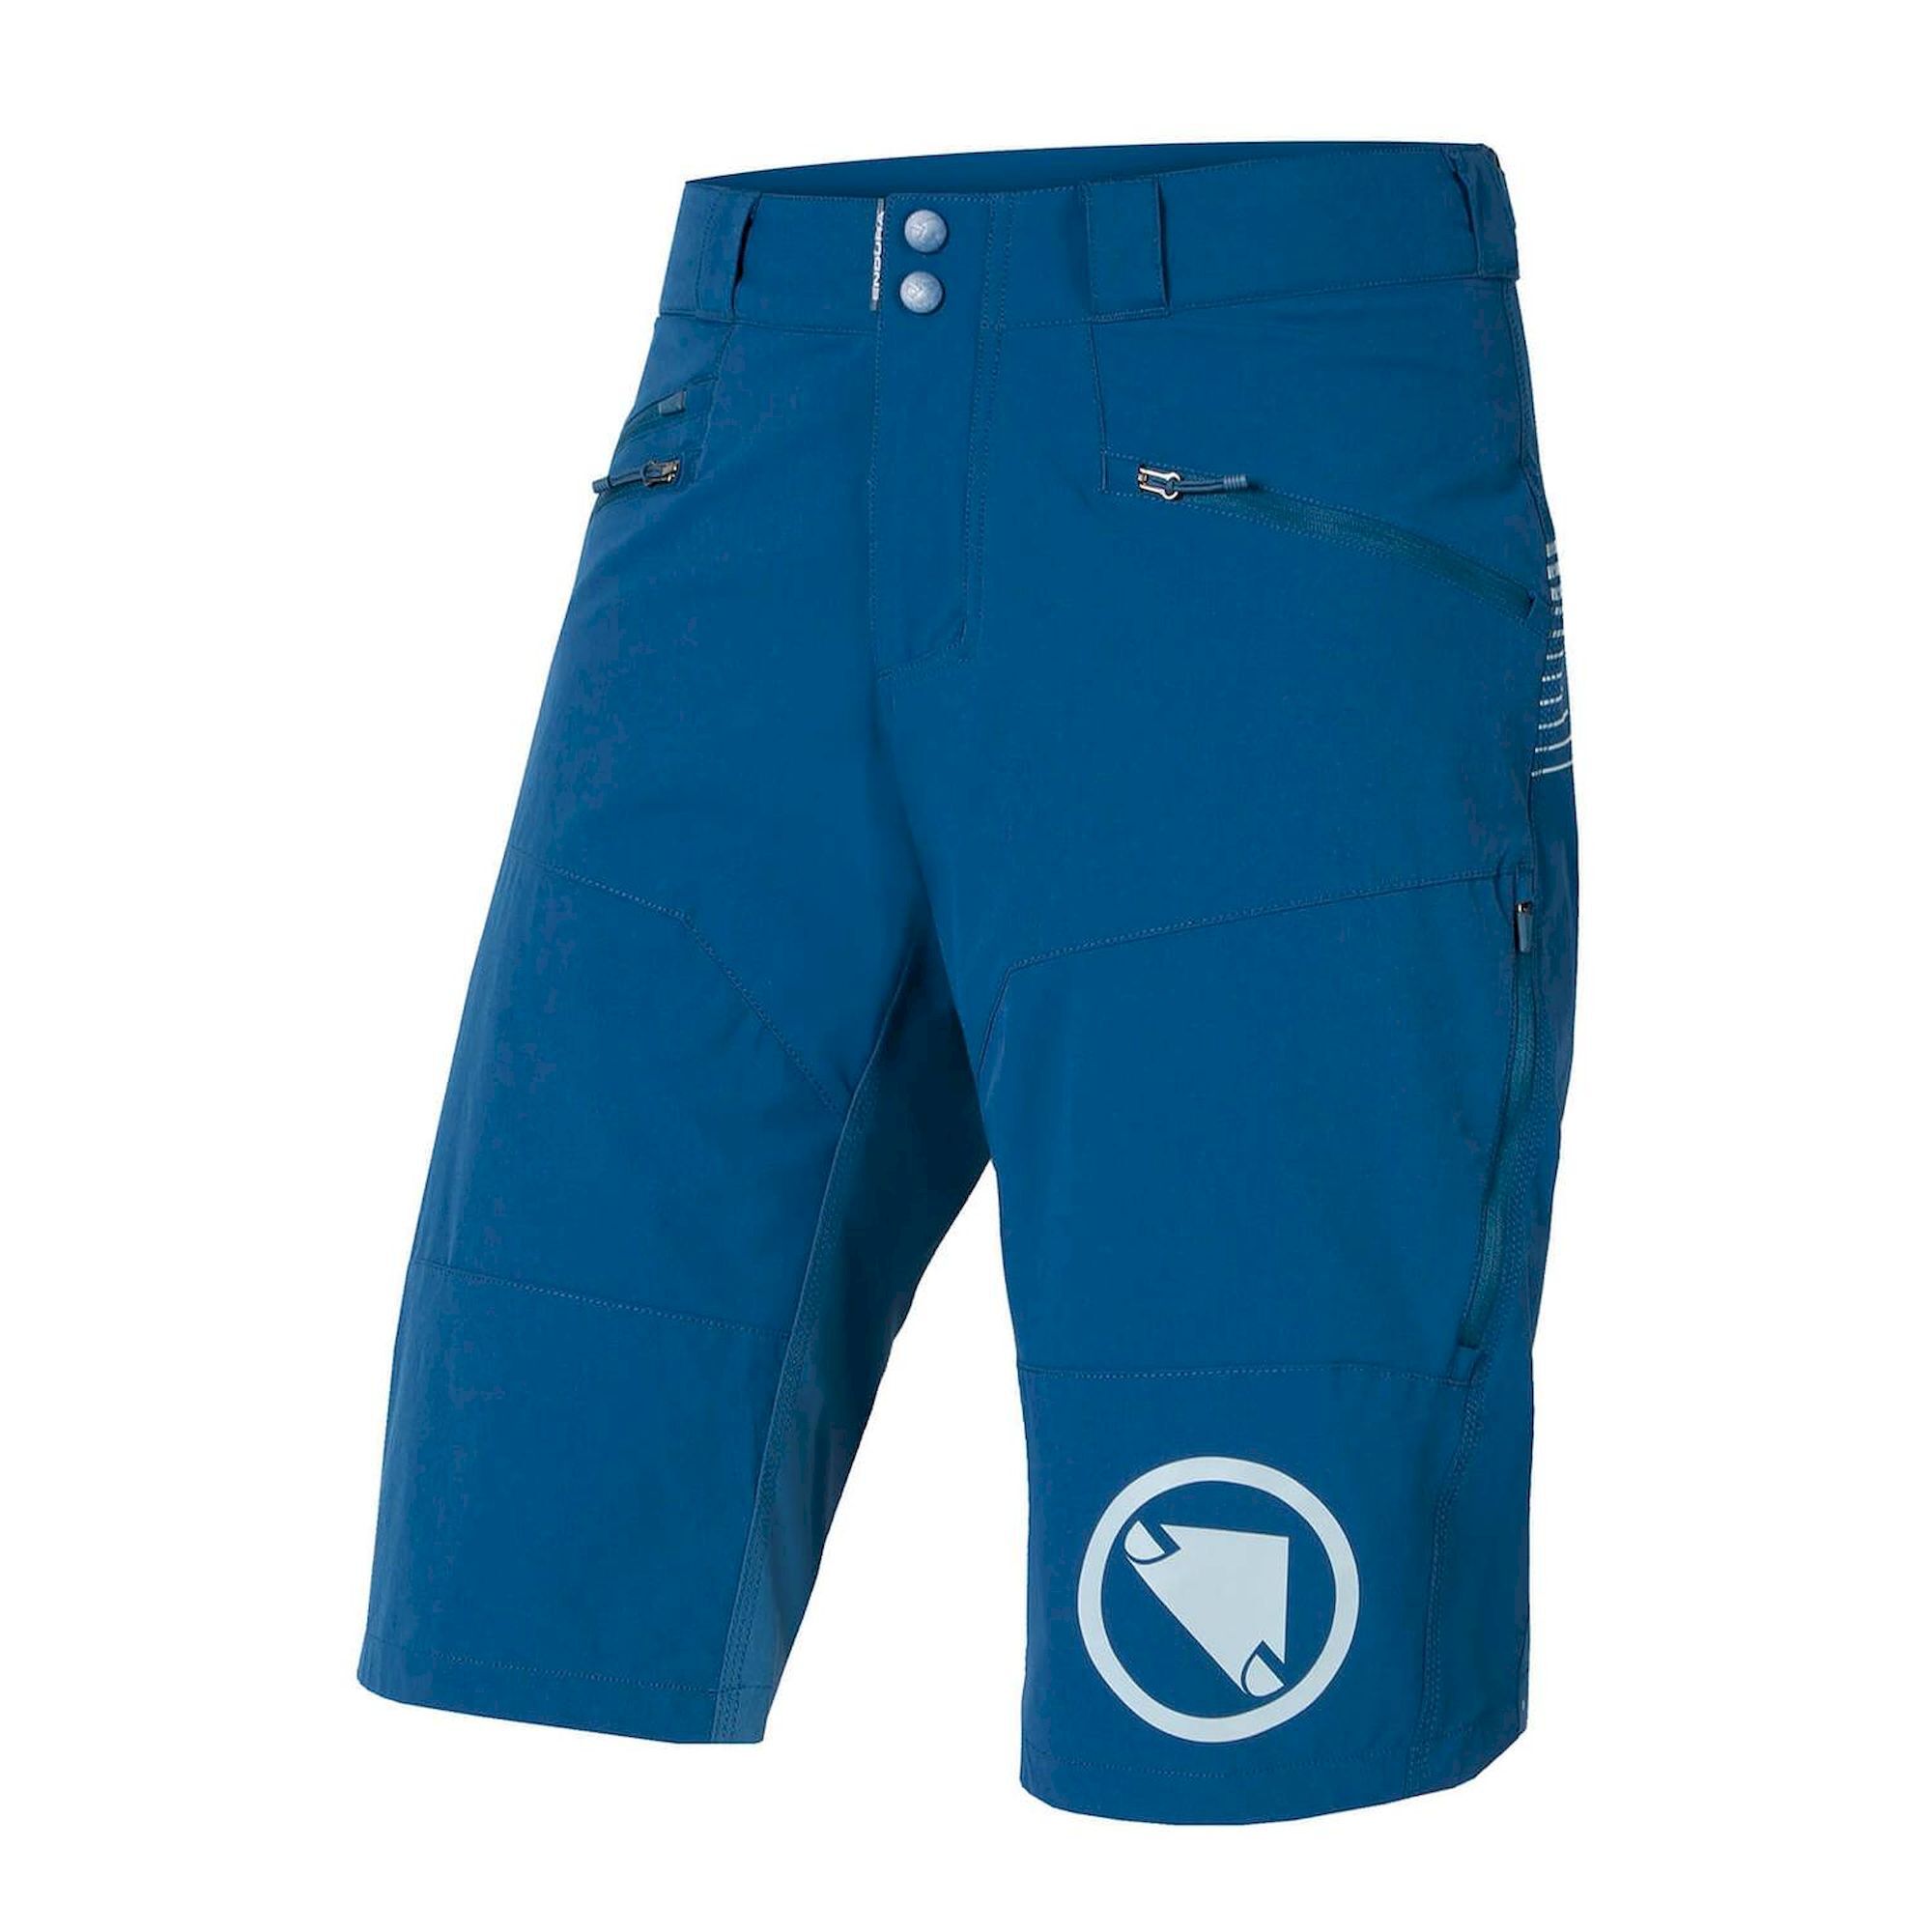 Endura SingleTrack Short II - MTB shorts - Men's